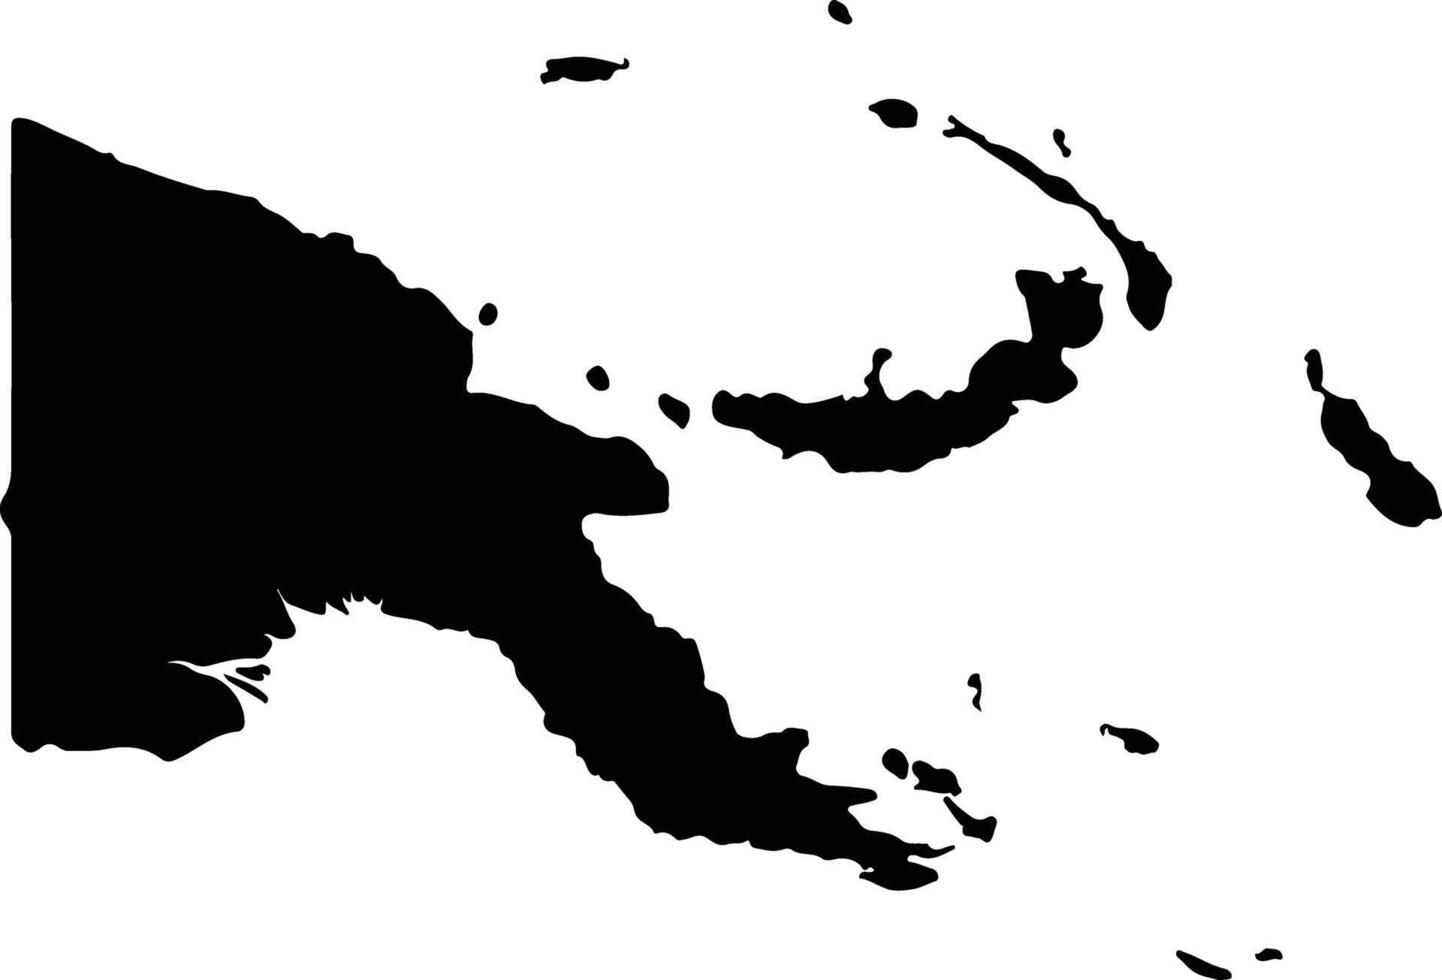 Papuasia nuevo Guinea silueta mapa vector